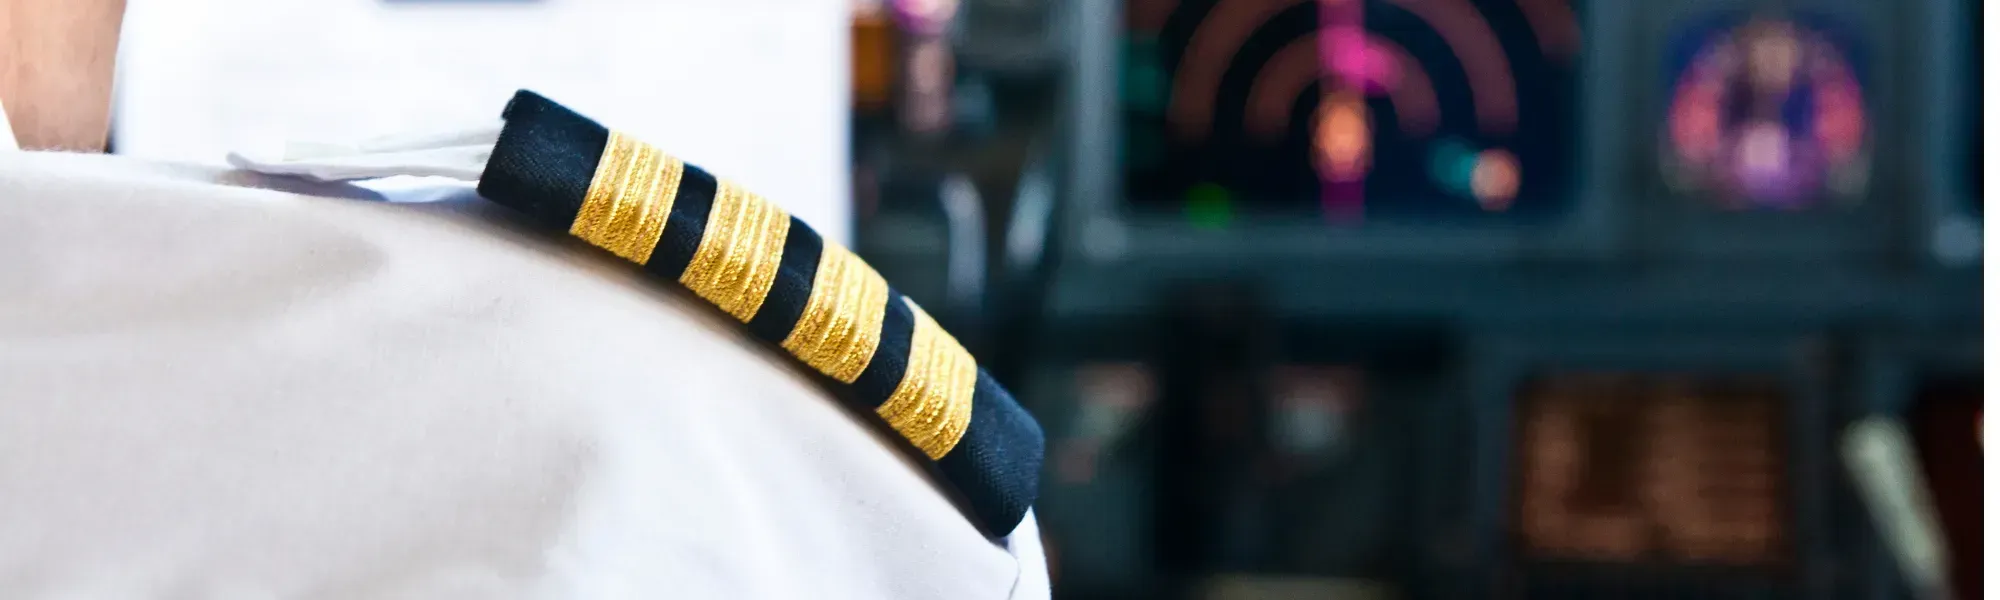 Pilot Jobs - Captain Jobs - First Officer Jobs - Airline Pilot Jobs - GOOSE Recruitment